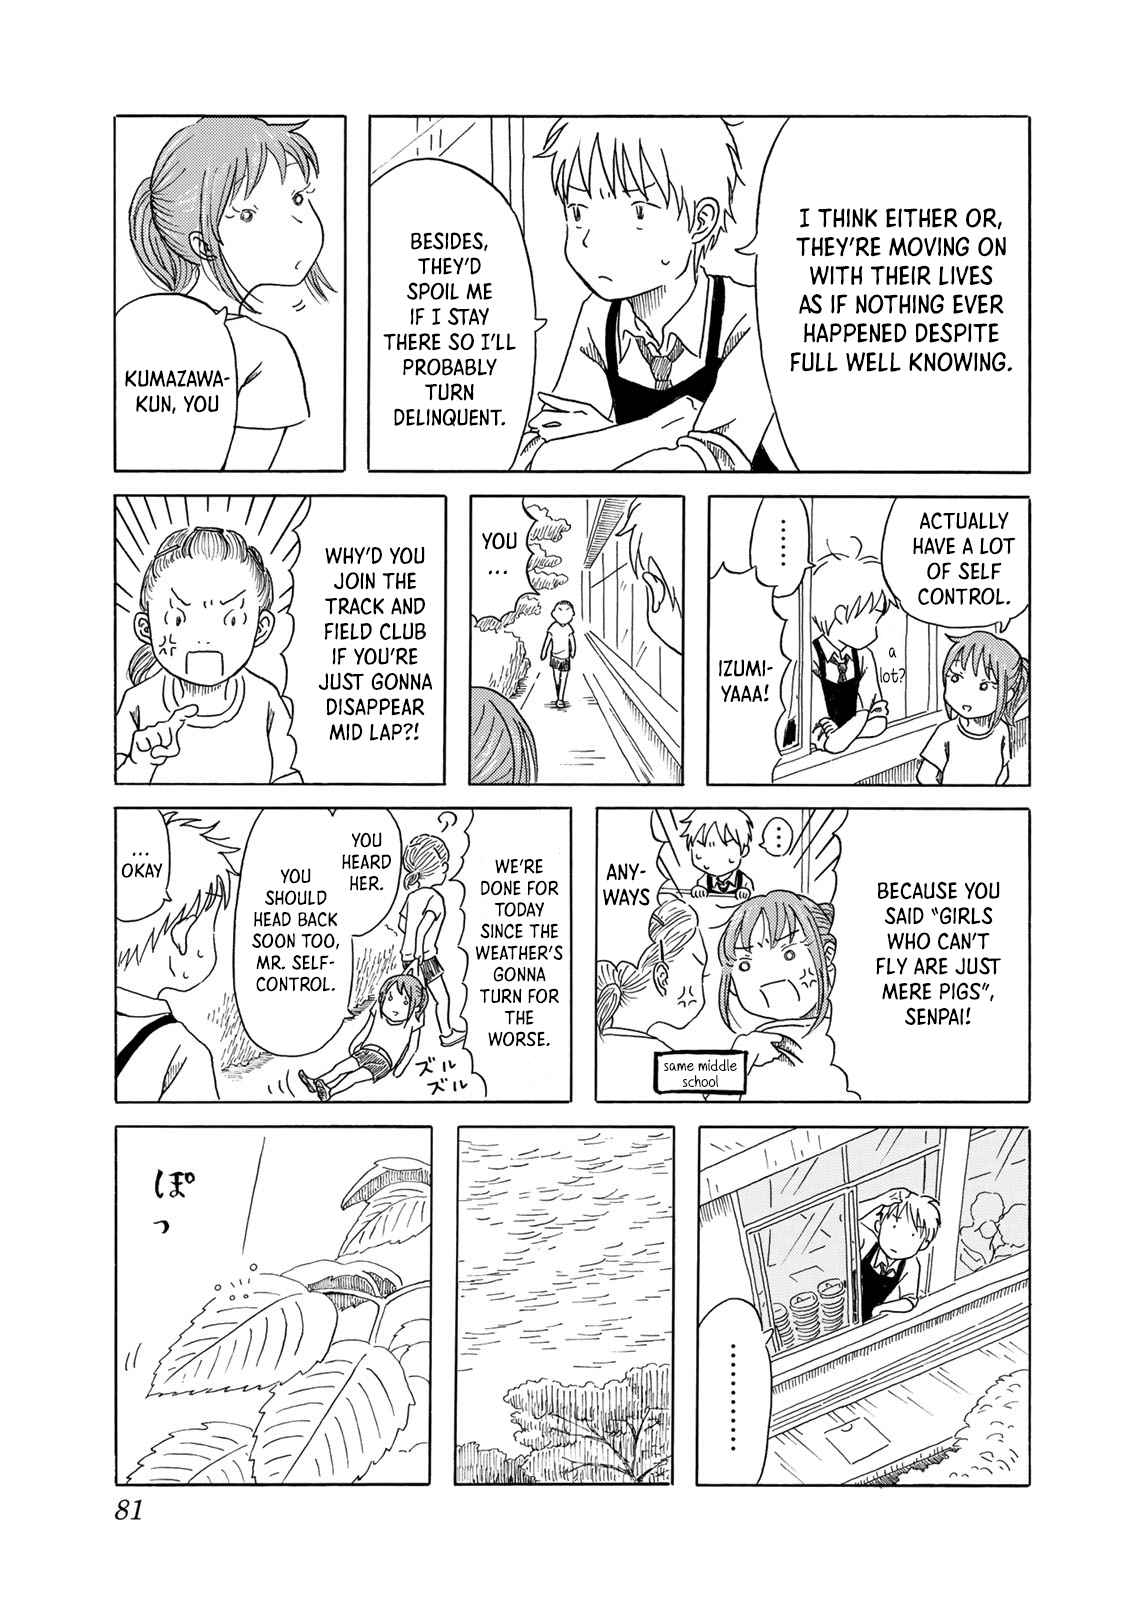 Mizu wa Umi ni Mukkate Nagareru Vol. 1 Ch. 4 Drip Drip, Splish Splash, No Plan Plan